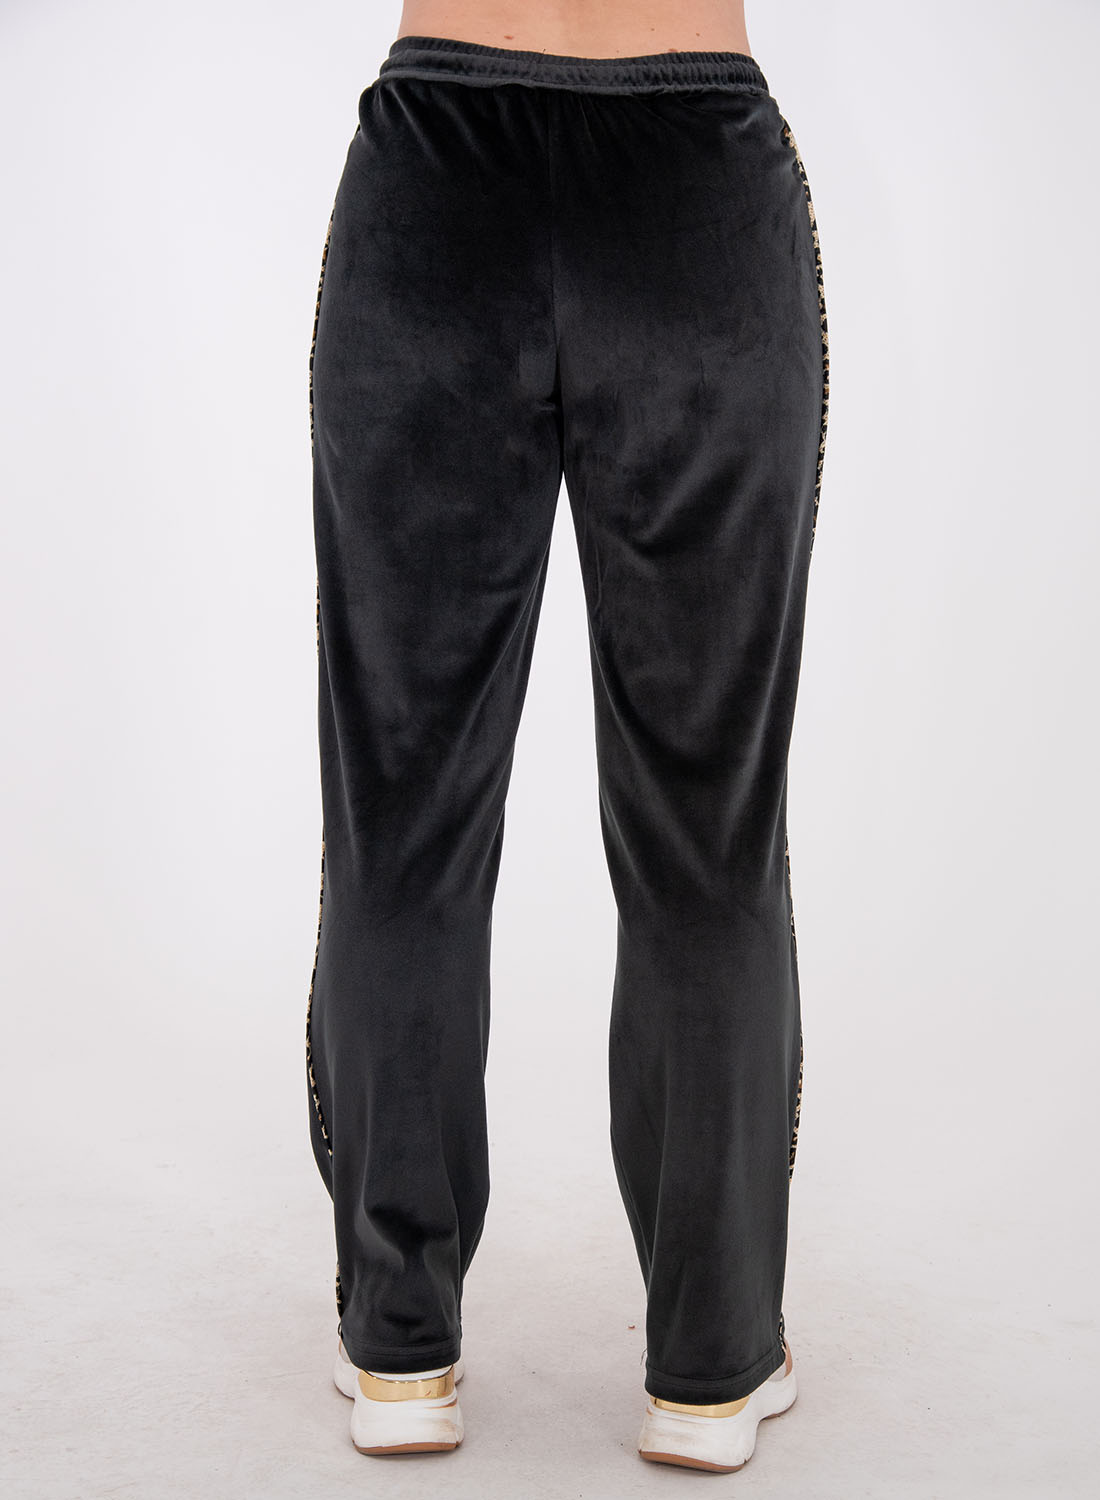 Μαύρο βελουτέ παντελόνι φόρμας με μοδάτη λεπτομέρεια